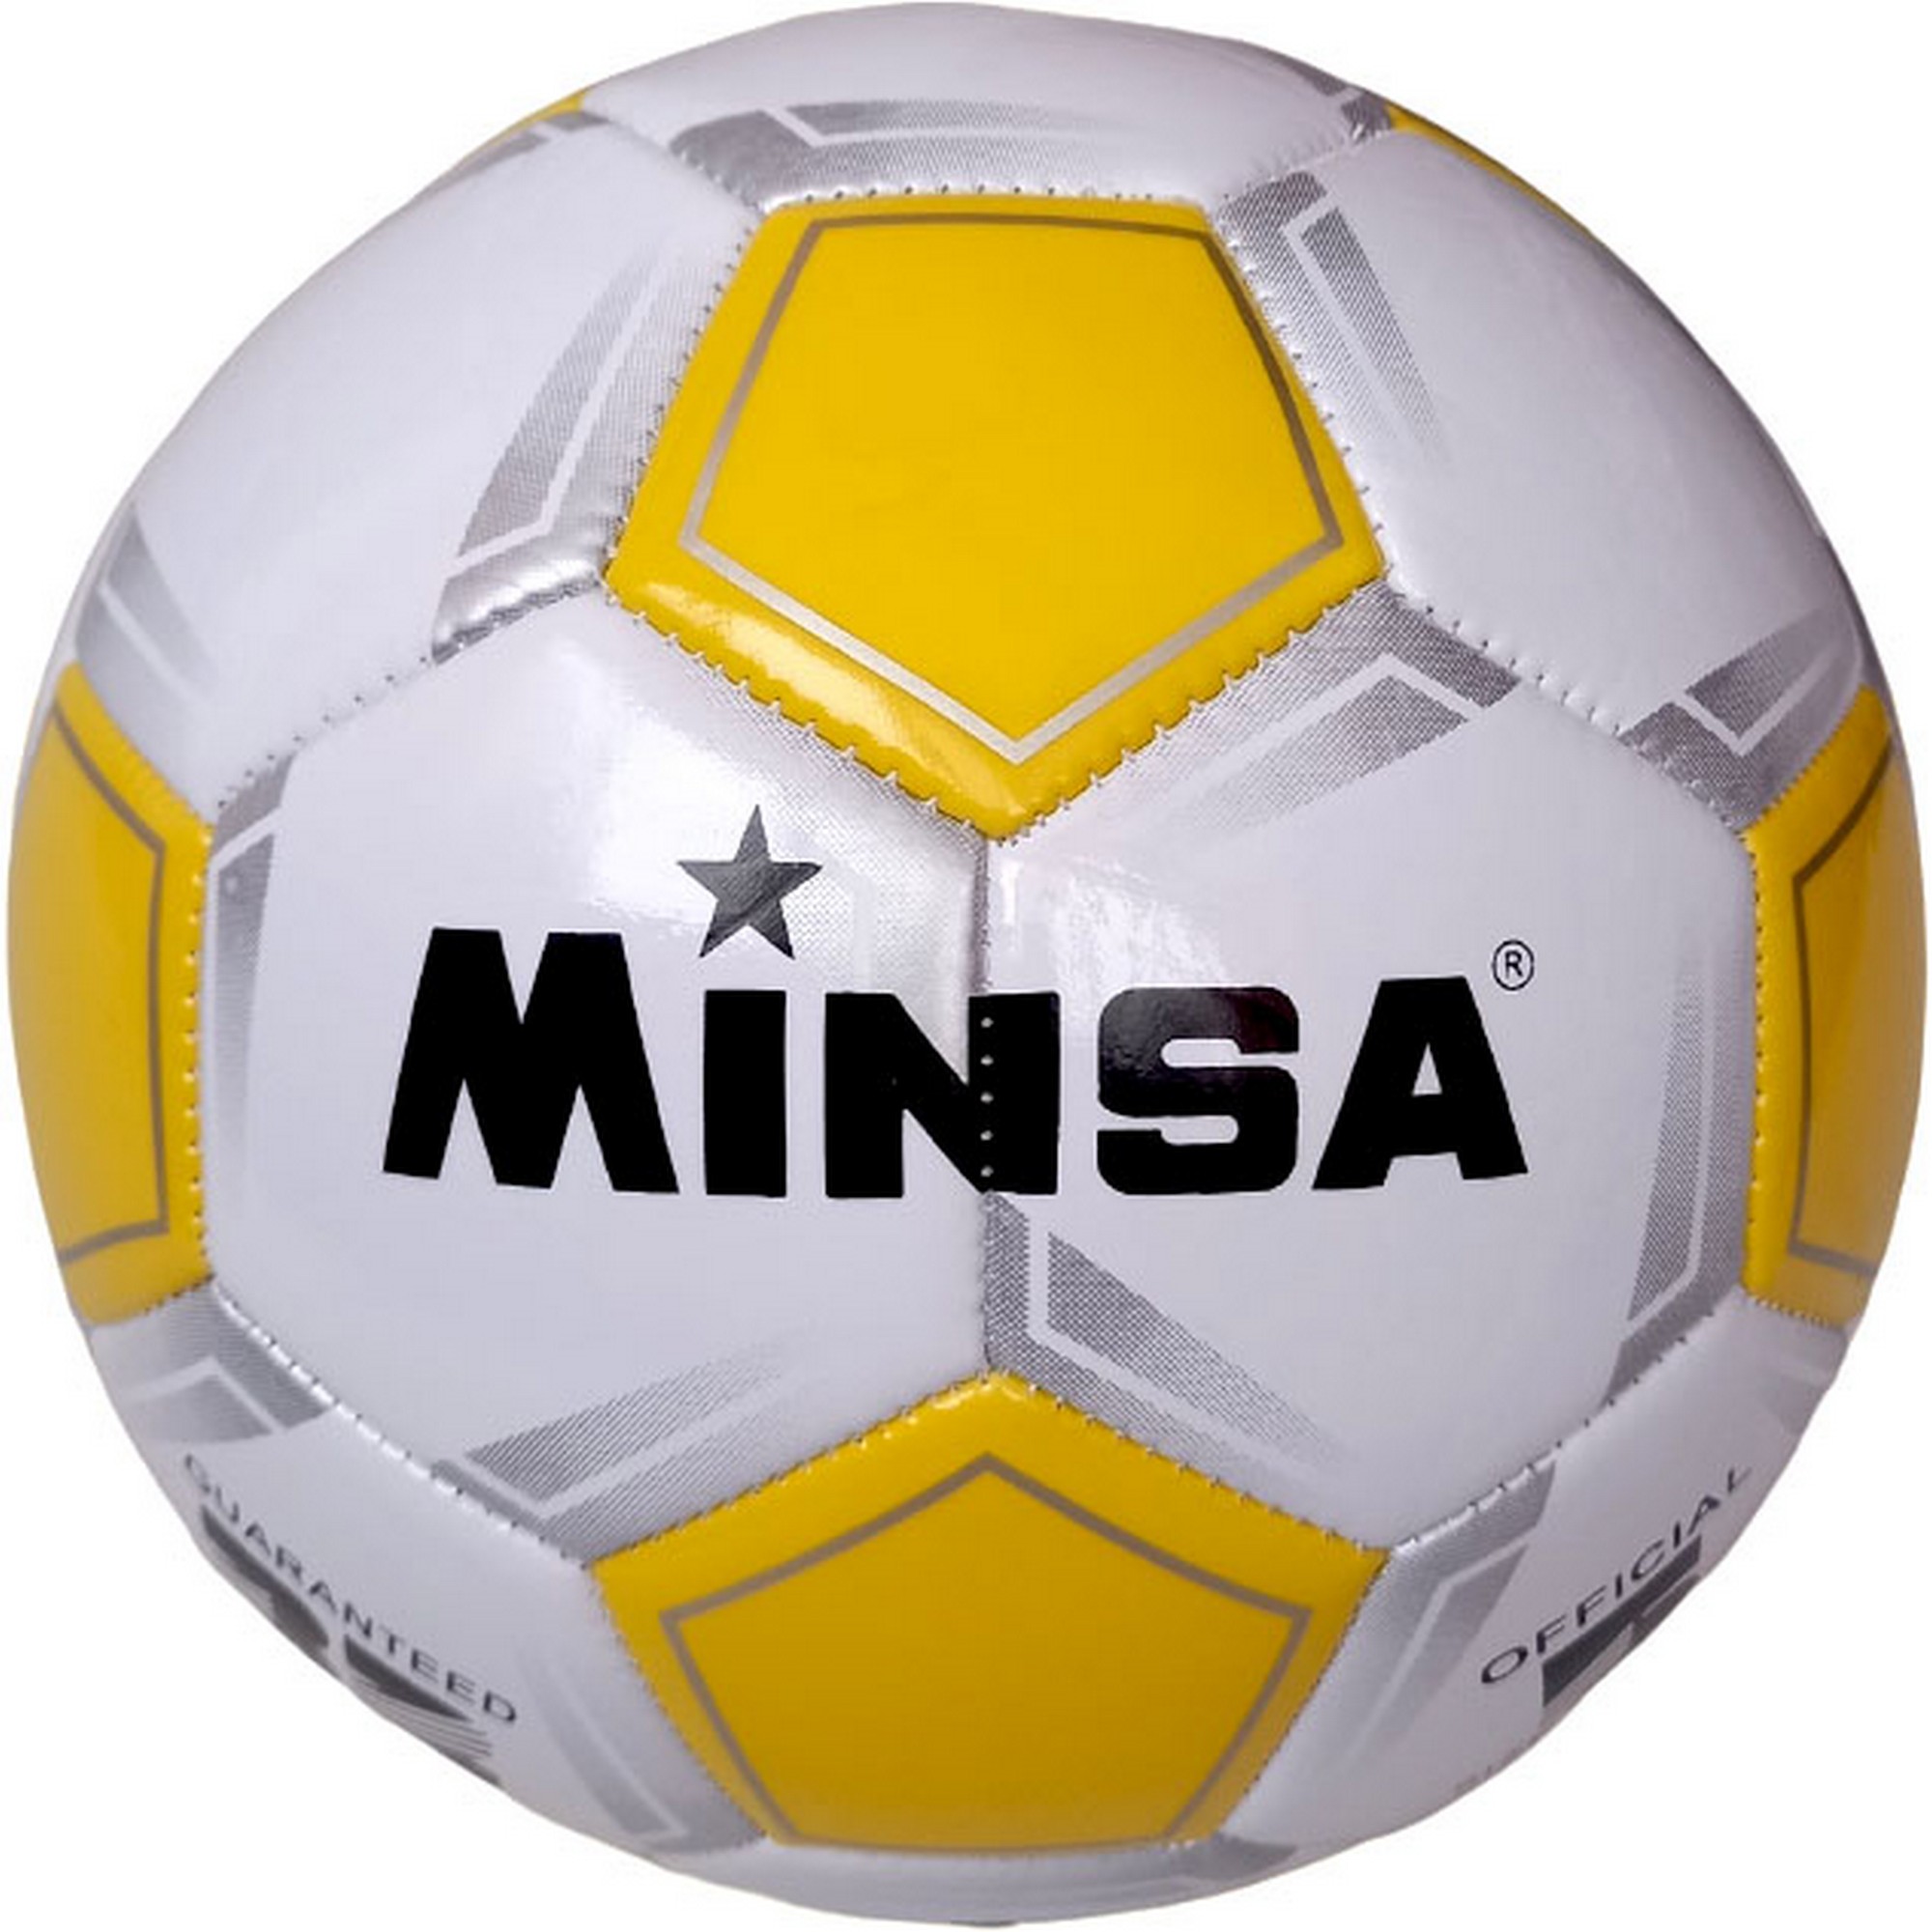   Minsa B5-9035-3 .5